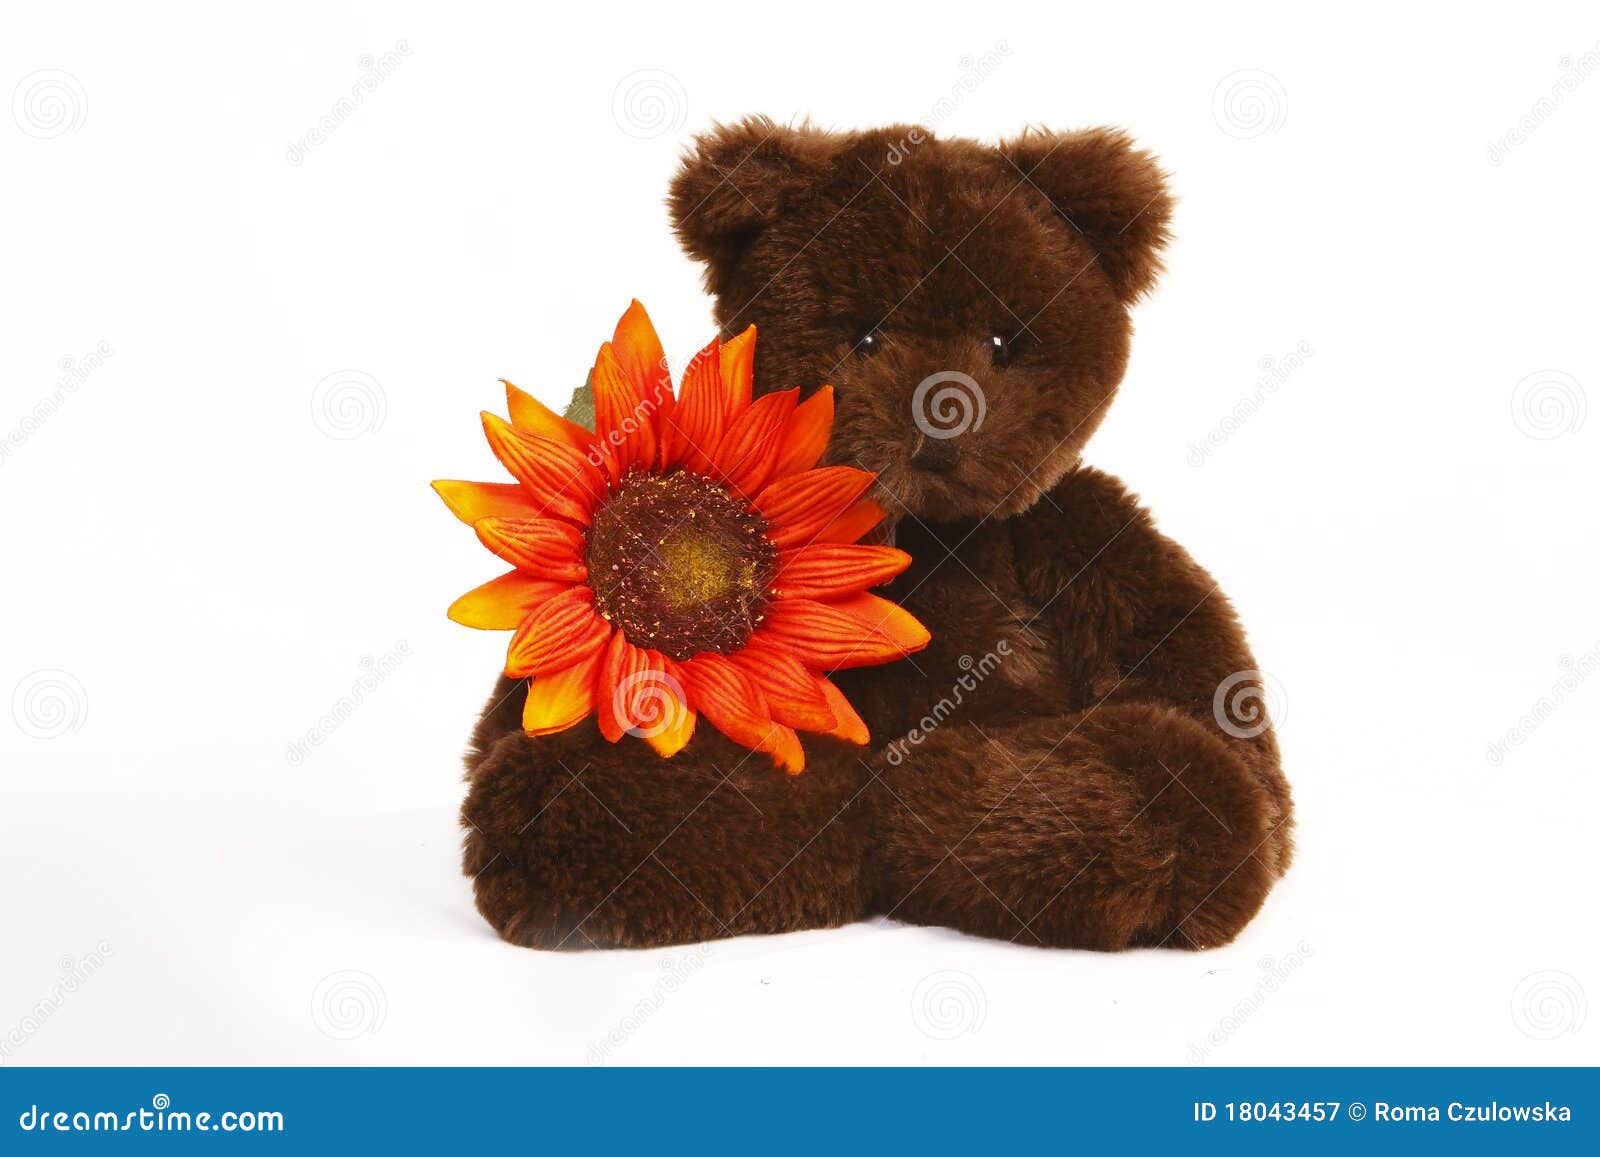 teddy bear with flowers clipart - photo #44